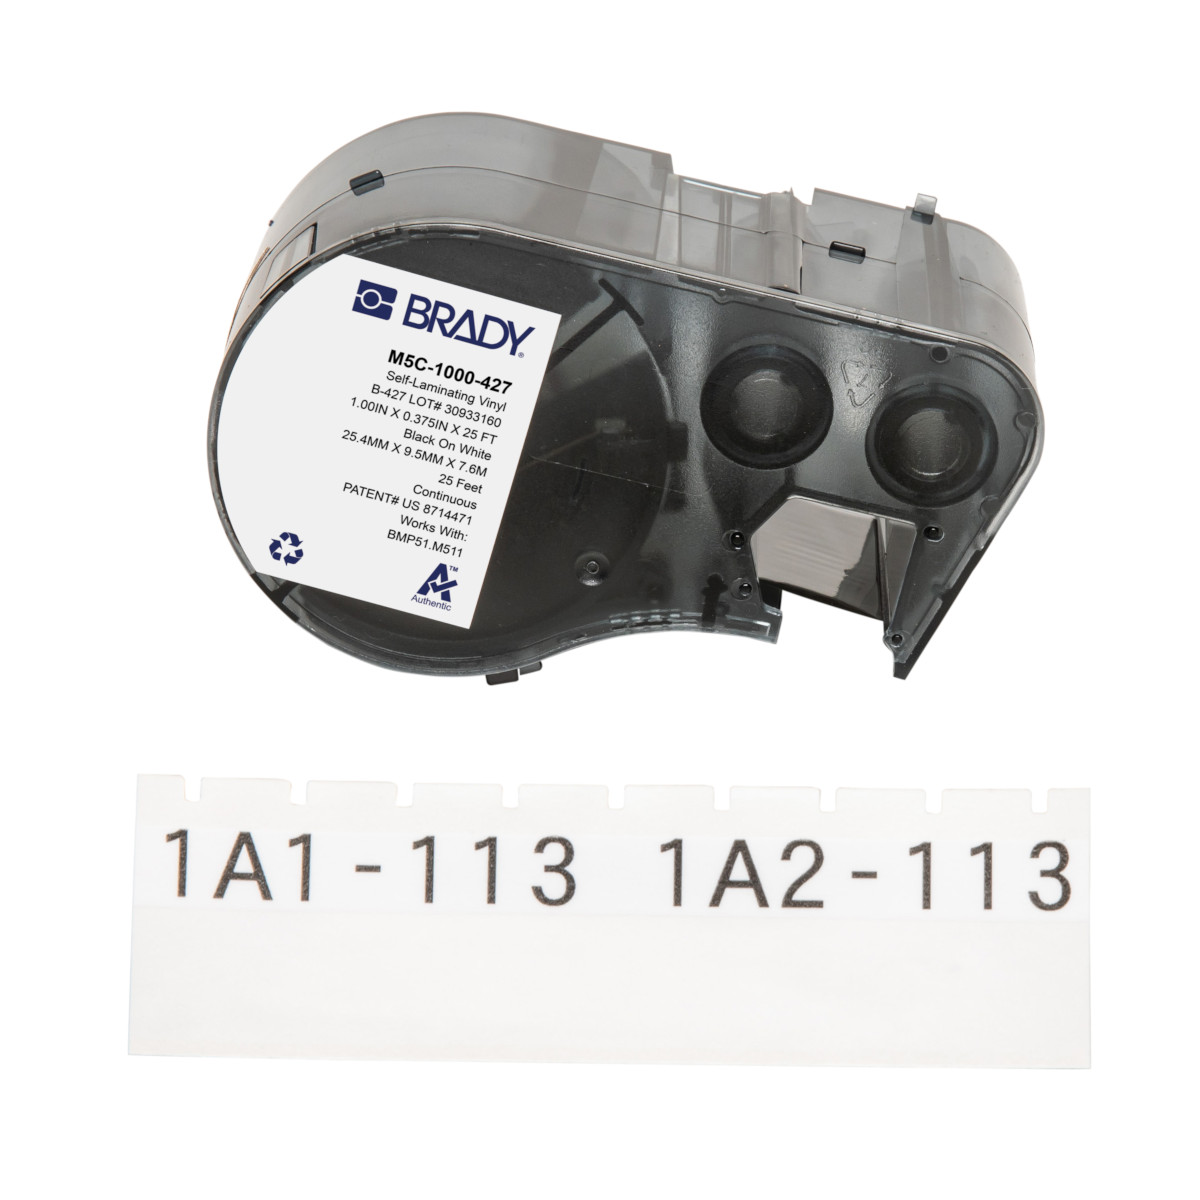 Étiquettes en vinyle auto-protégées pour fils et câbles pour étiqueteuses BMP51 et M511